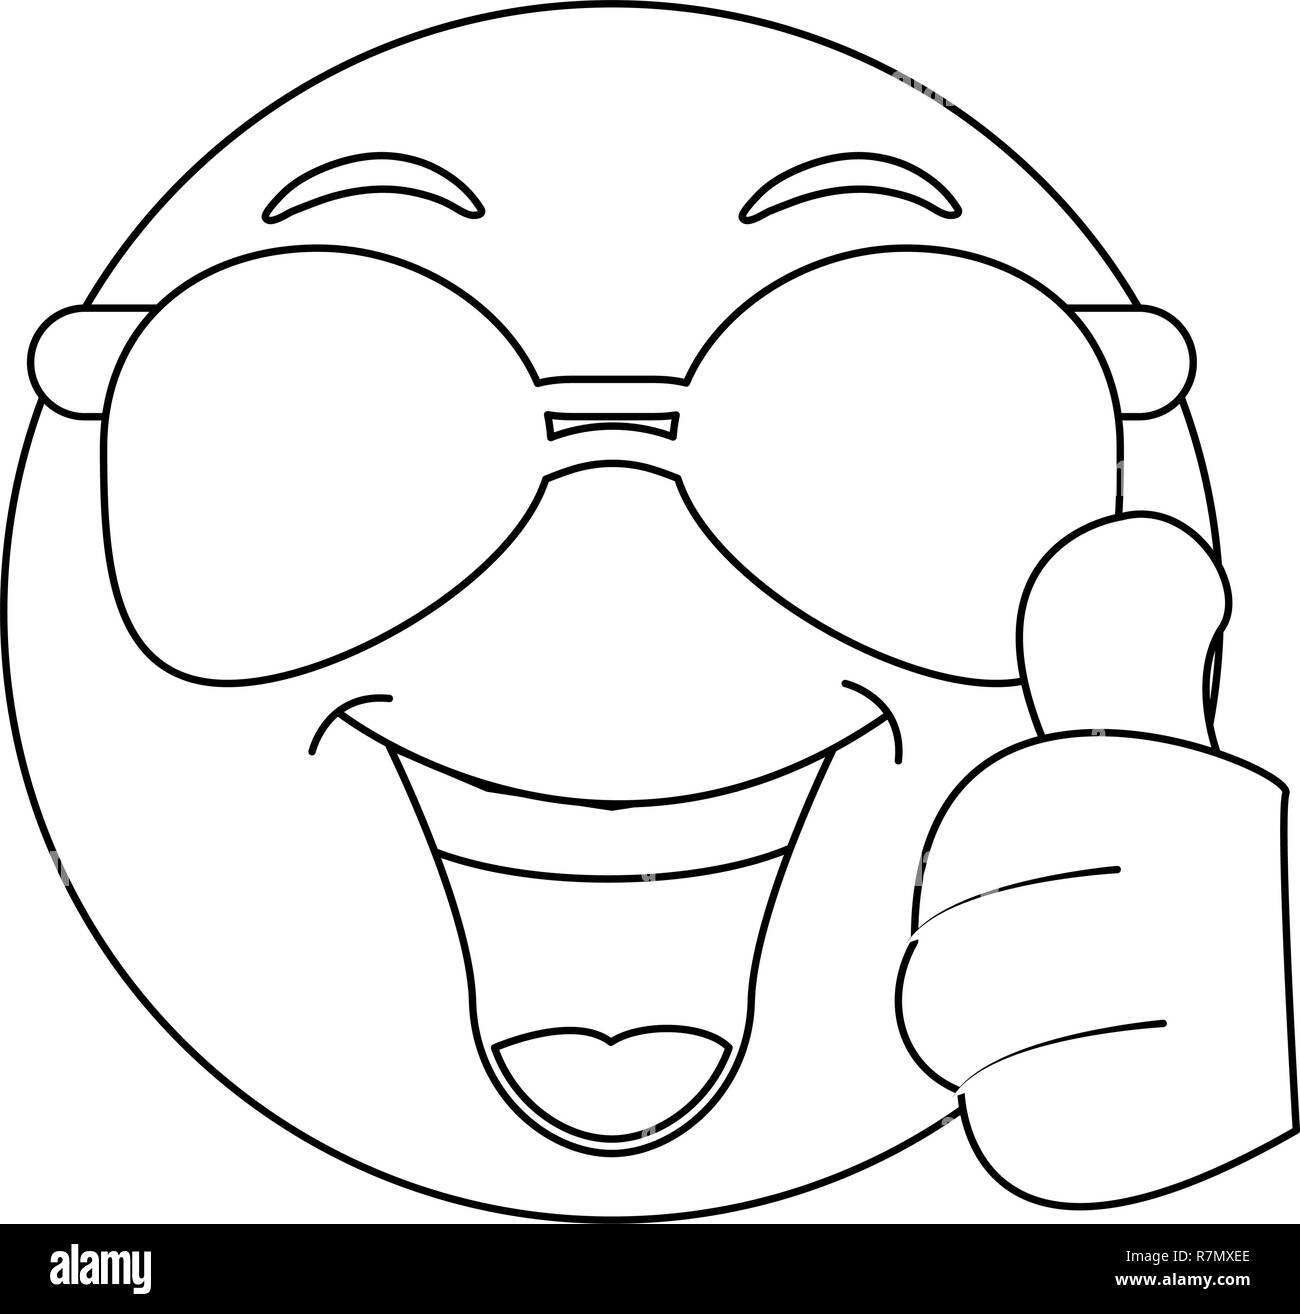 émoticône de lunettes de soleil Banque d'images noir et blanc - Alamy